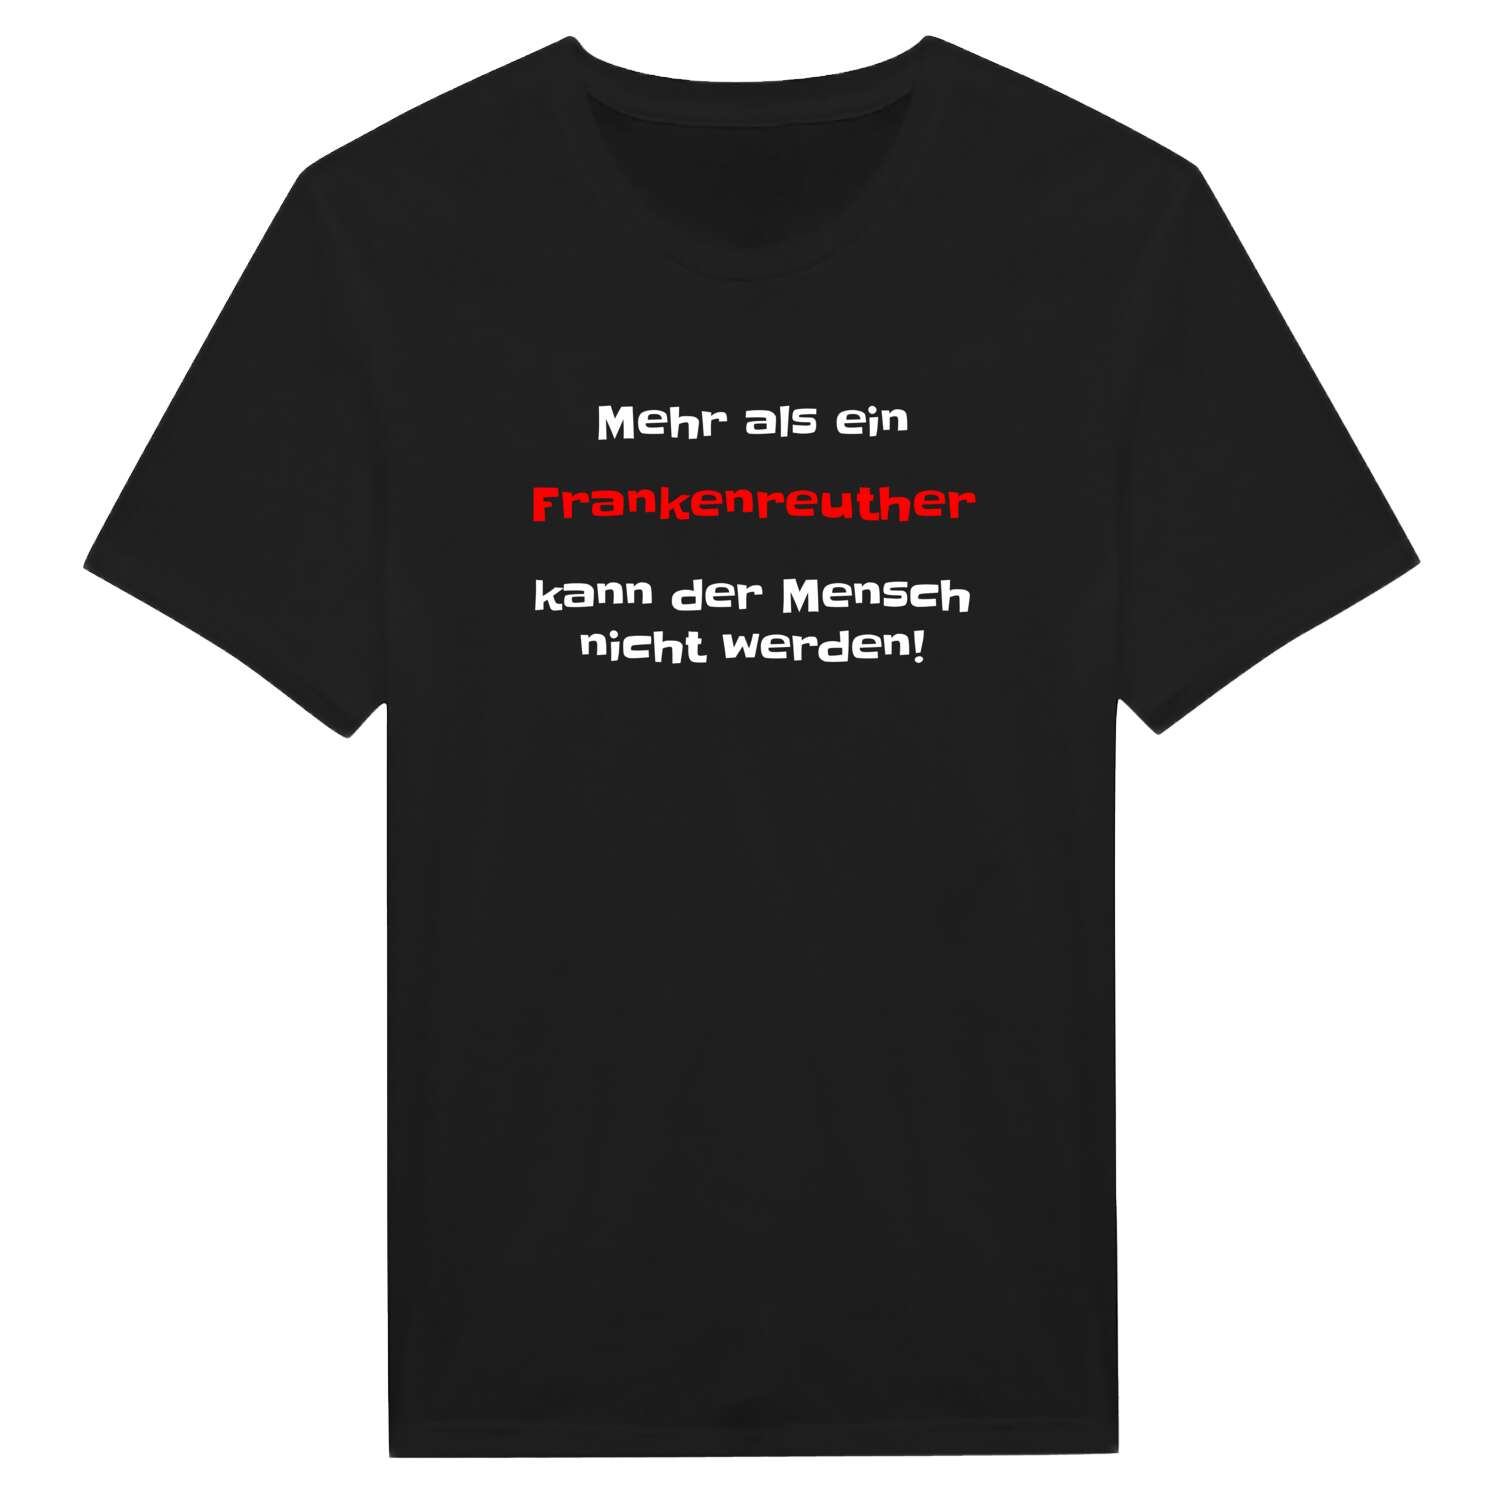 Frankenreuth T-Shirt »Mehr als ein«